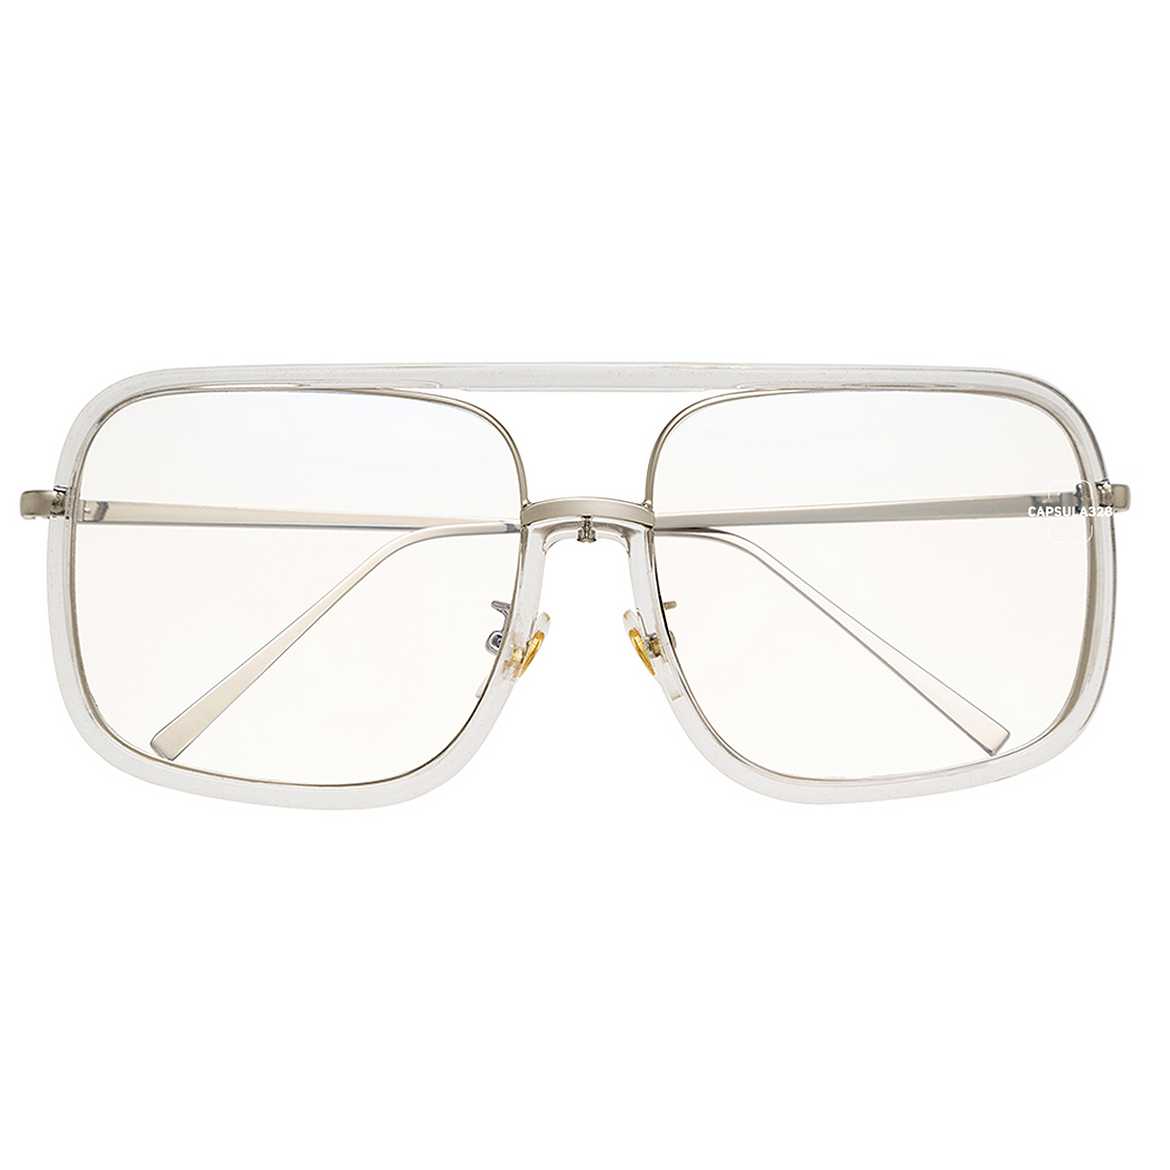 Имиджевые очки Square 1405